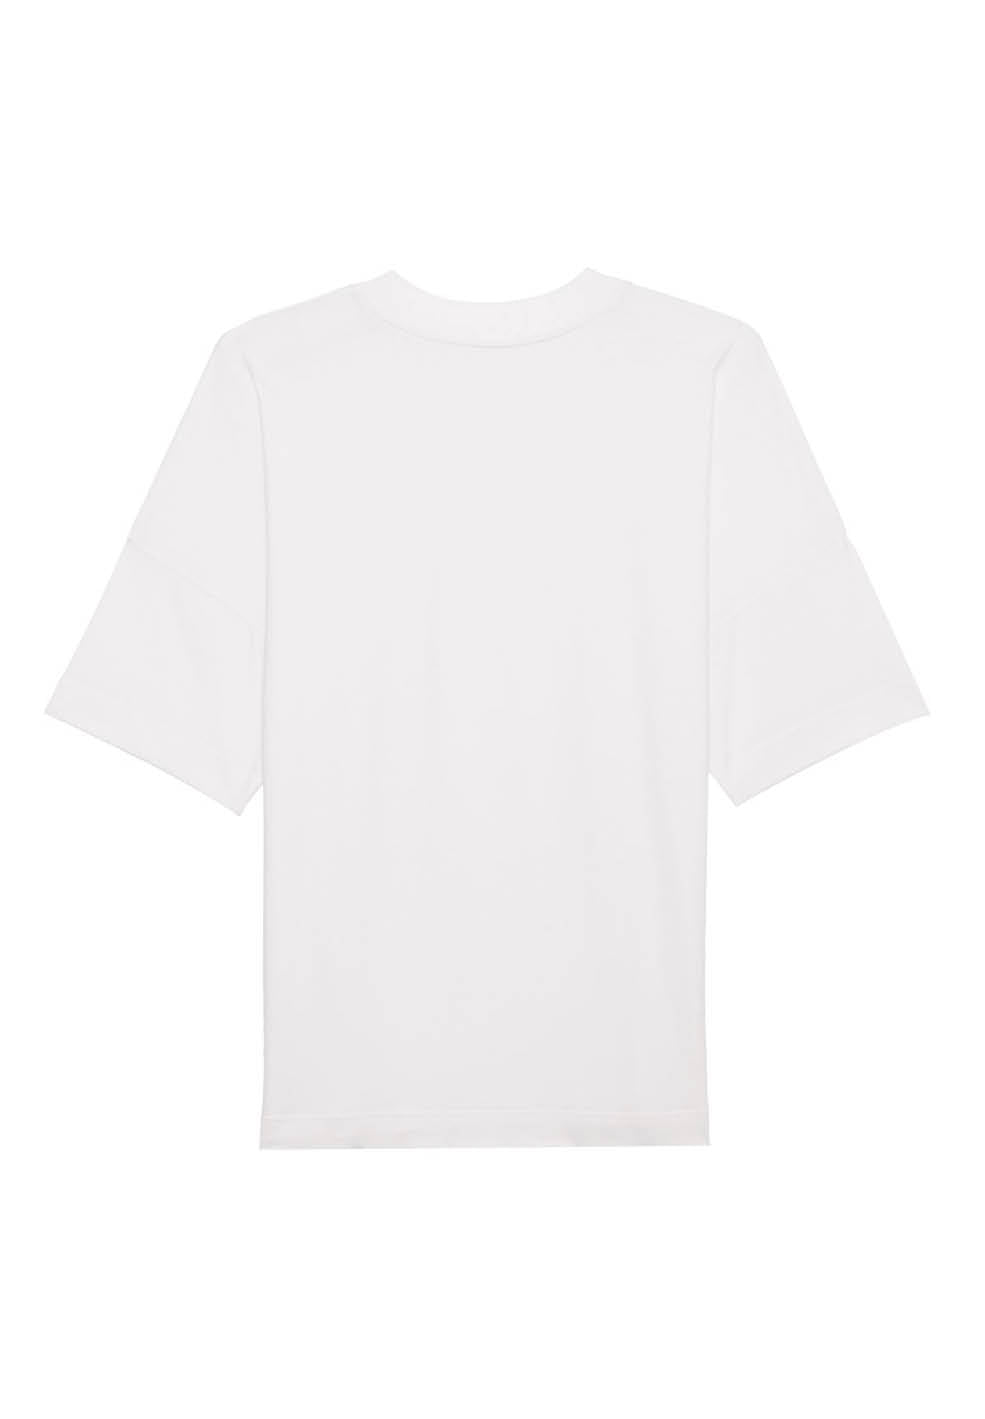 oversized t-shirt blaster white